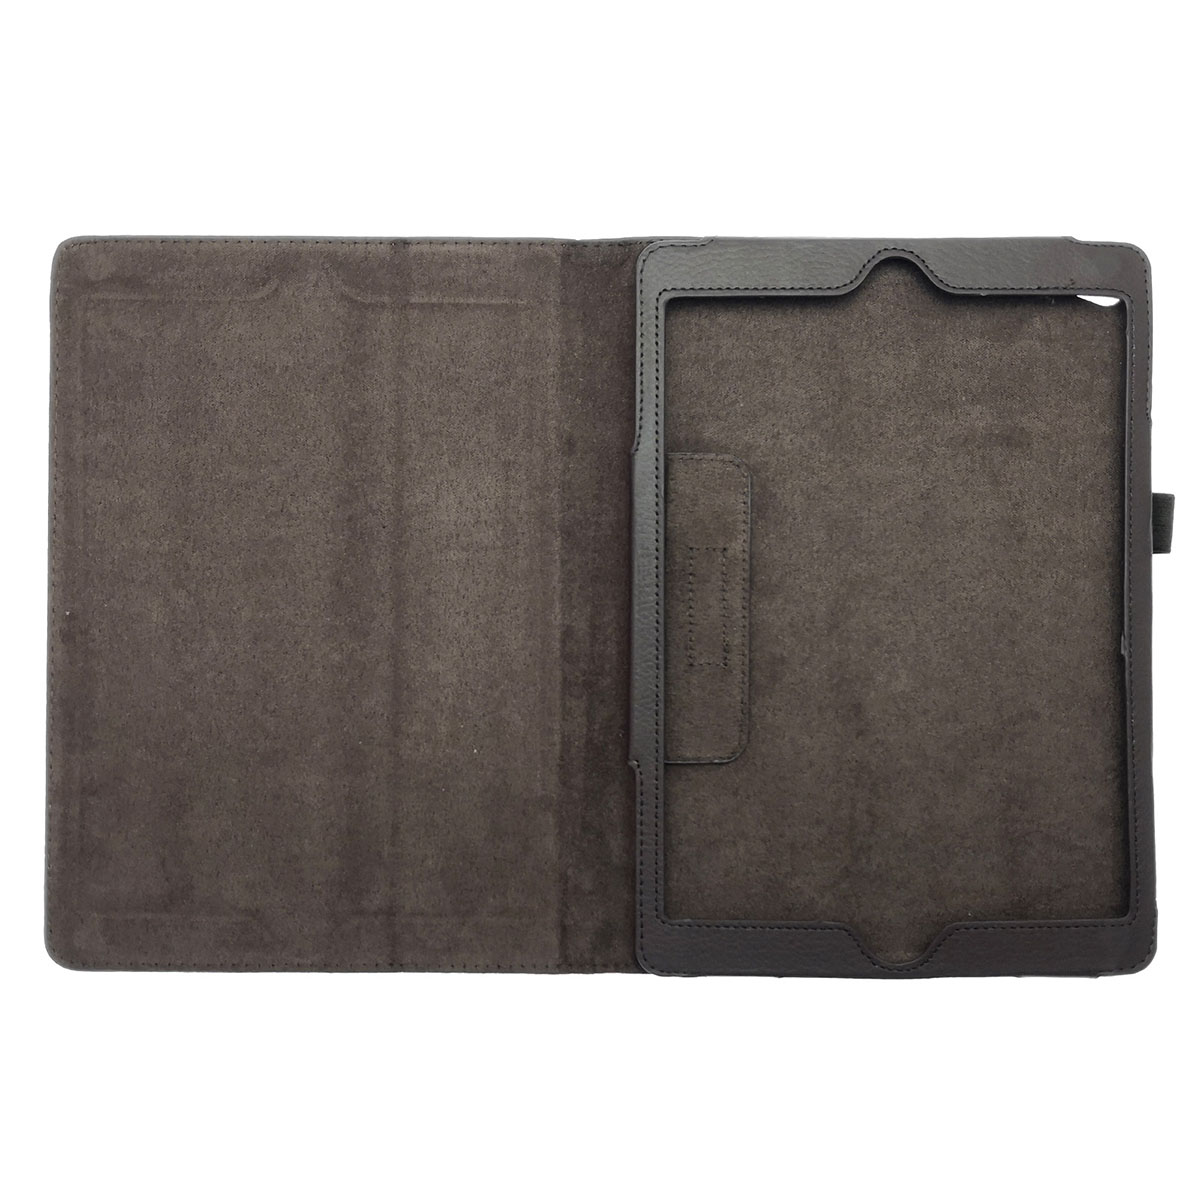 Чехол книжка для APPLE iPad Air, Air 2, экокожа, цвет коричневый.